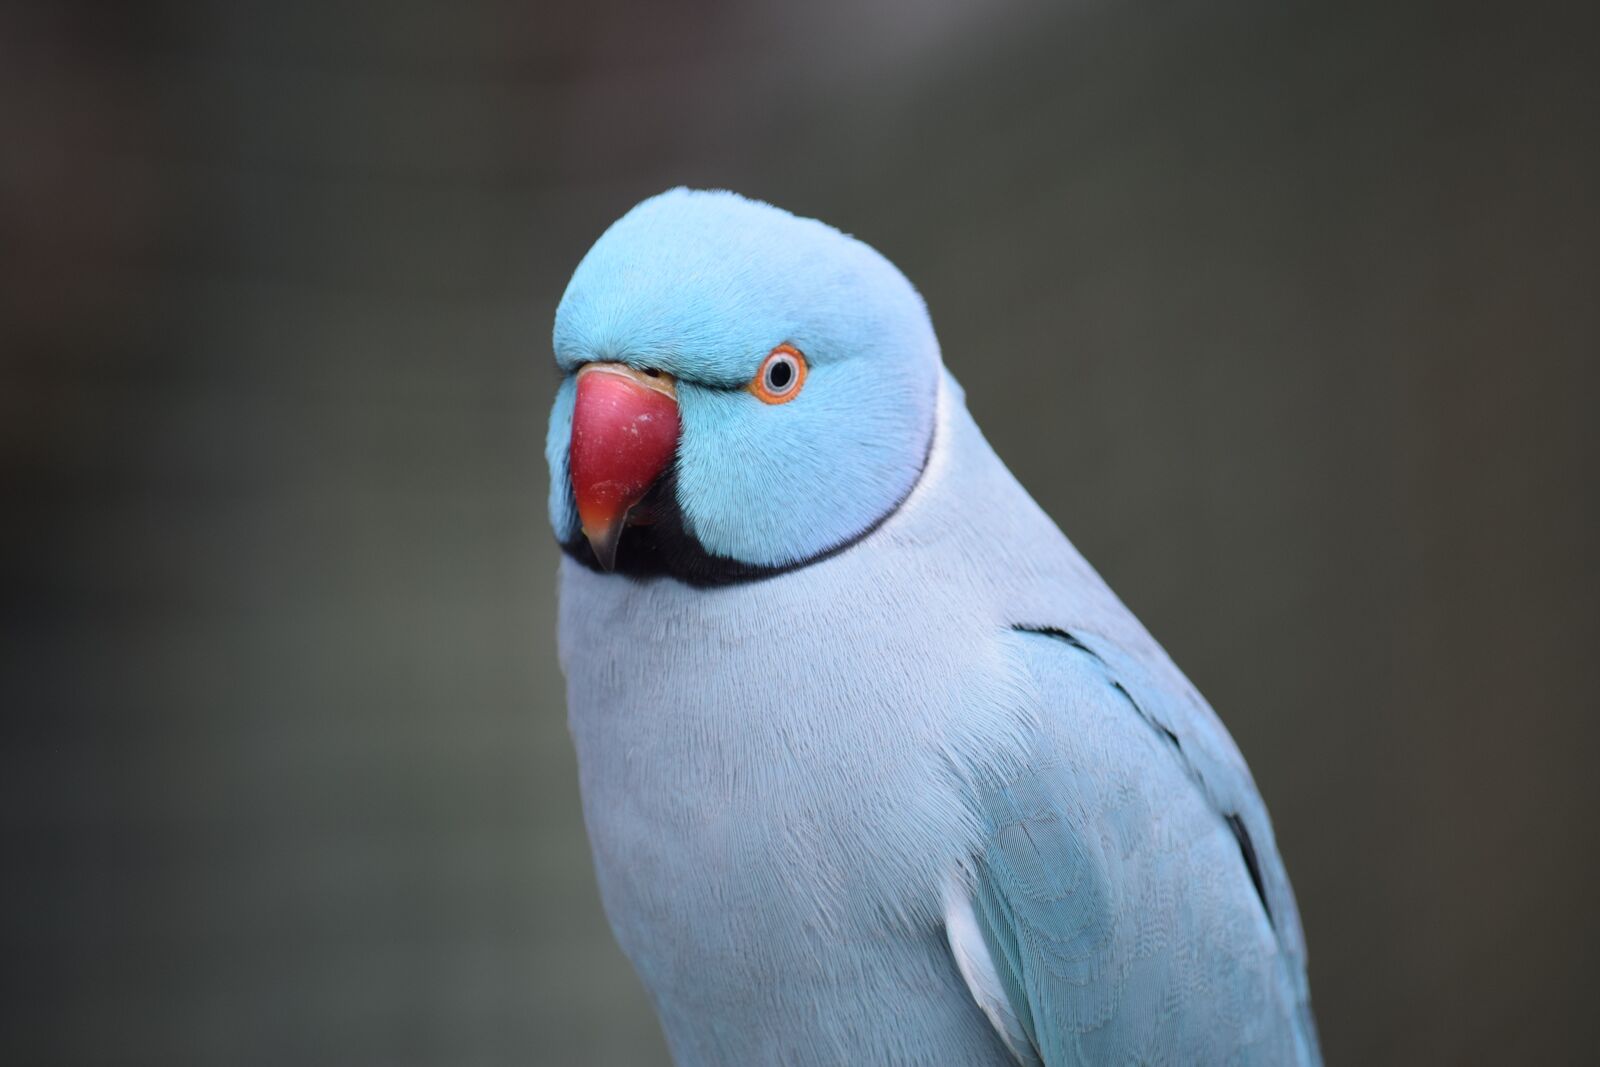 Nikon D3300 sample photo. Parrot, bird, blue photography